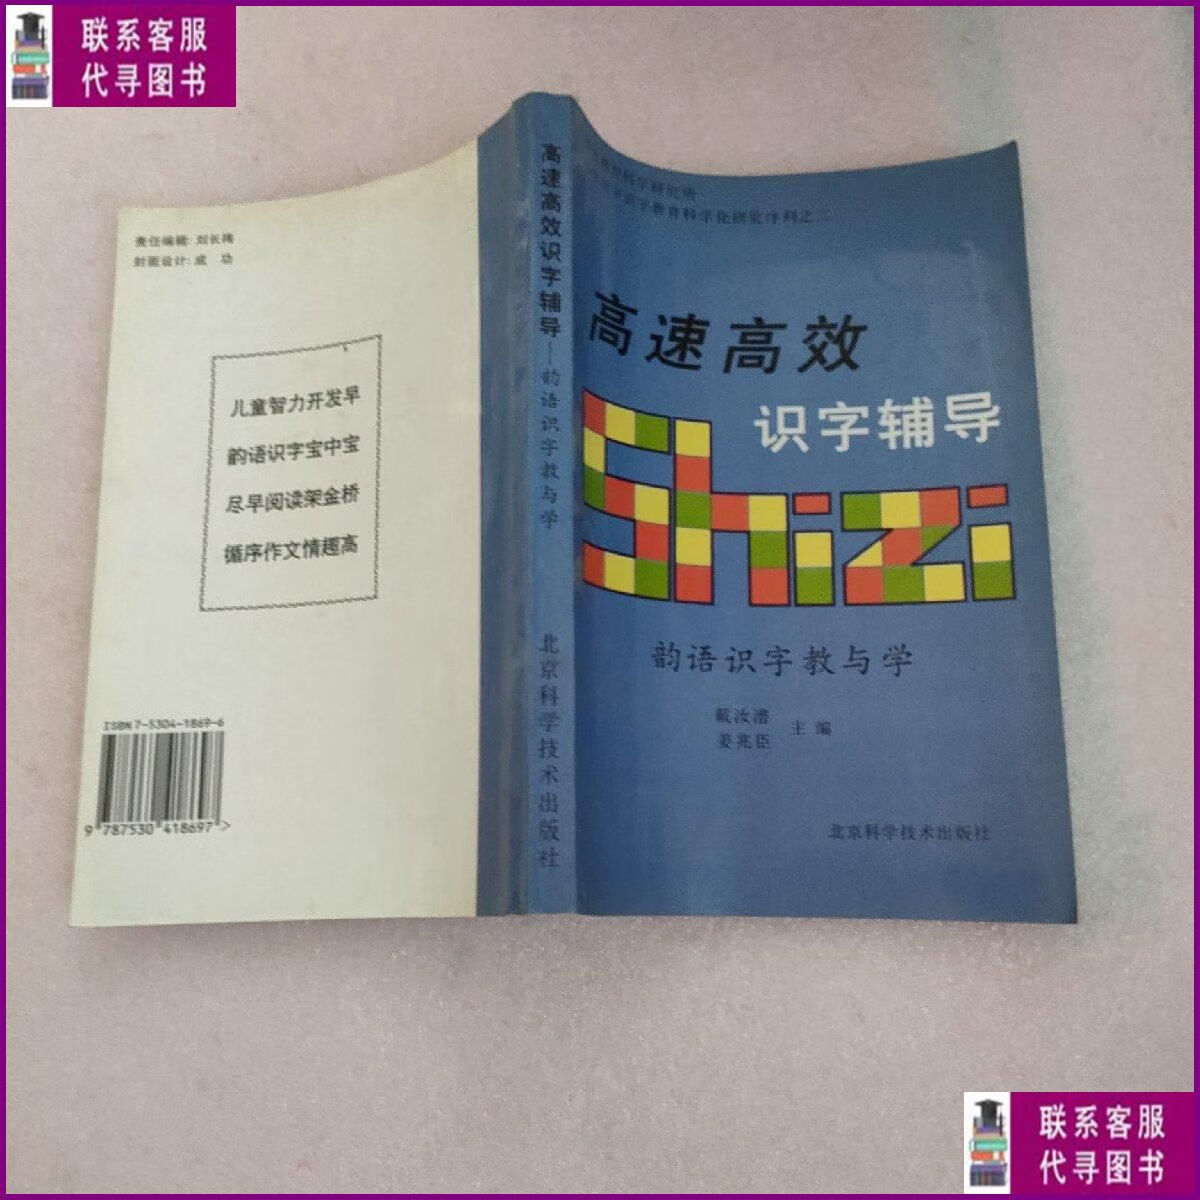 【二手9成新】高速高效识字辅导:“韵语识字”教与学 北京科学技